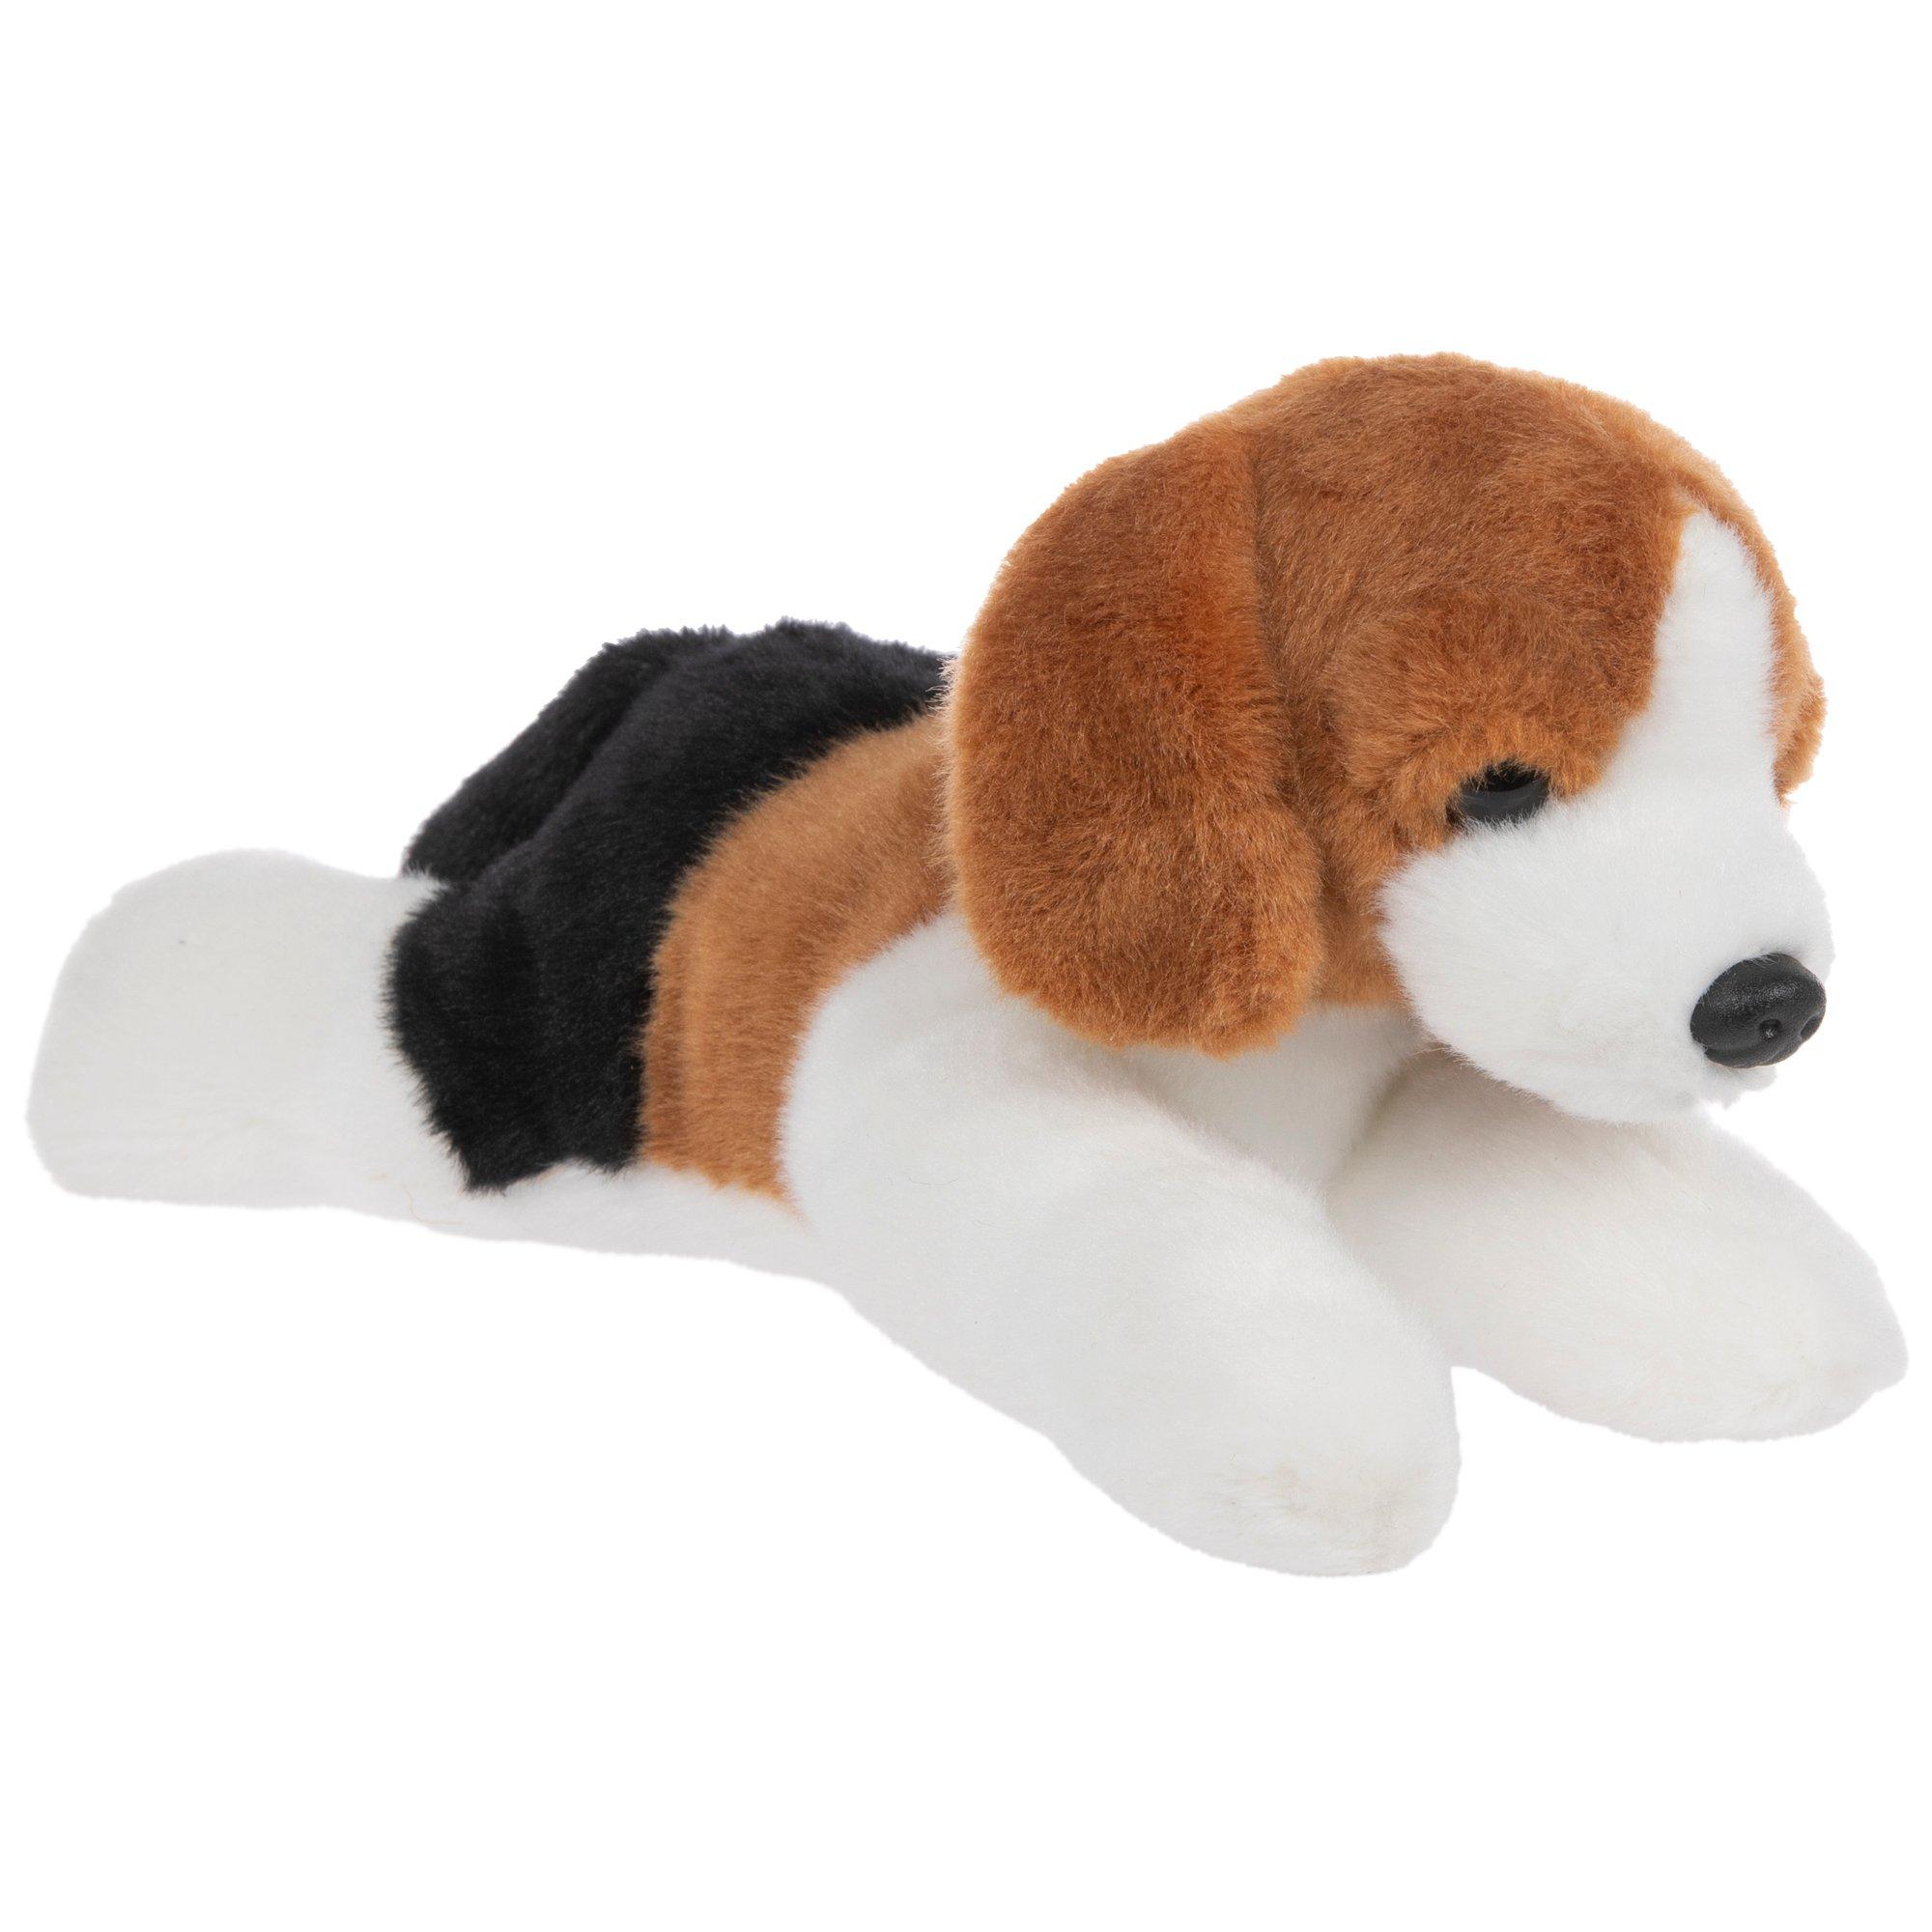 Rescue Dog - Beagle - Wild Republic